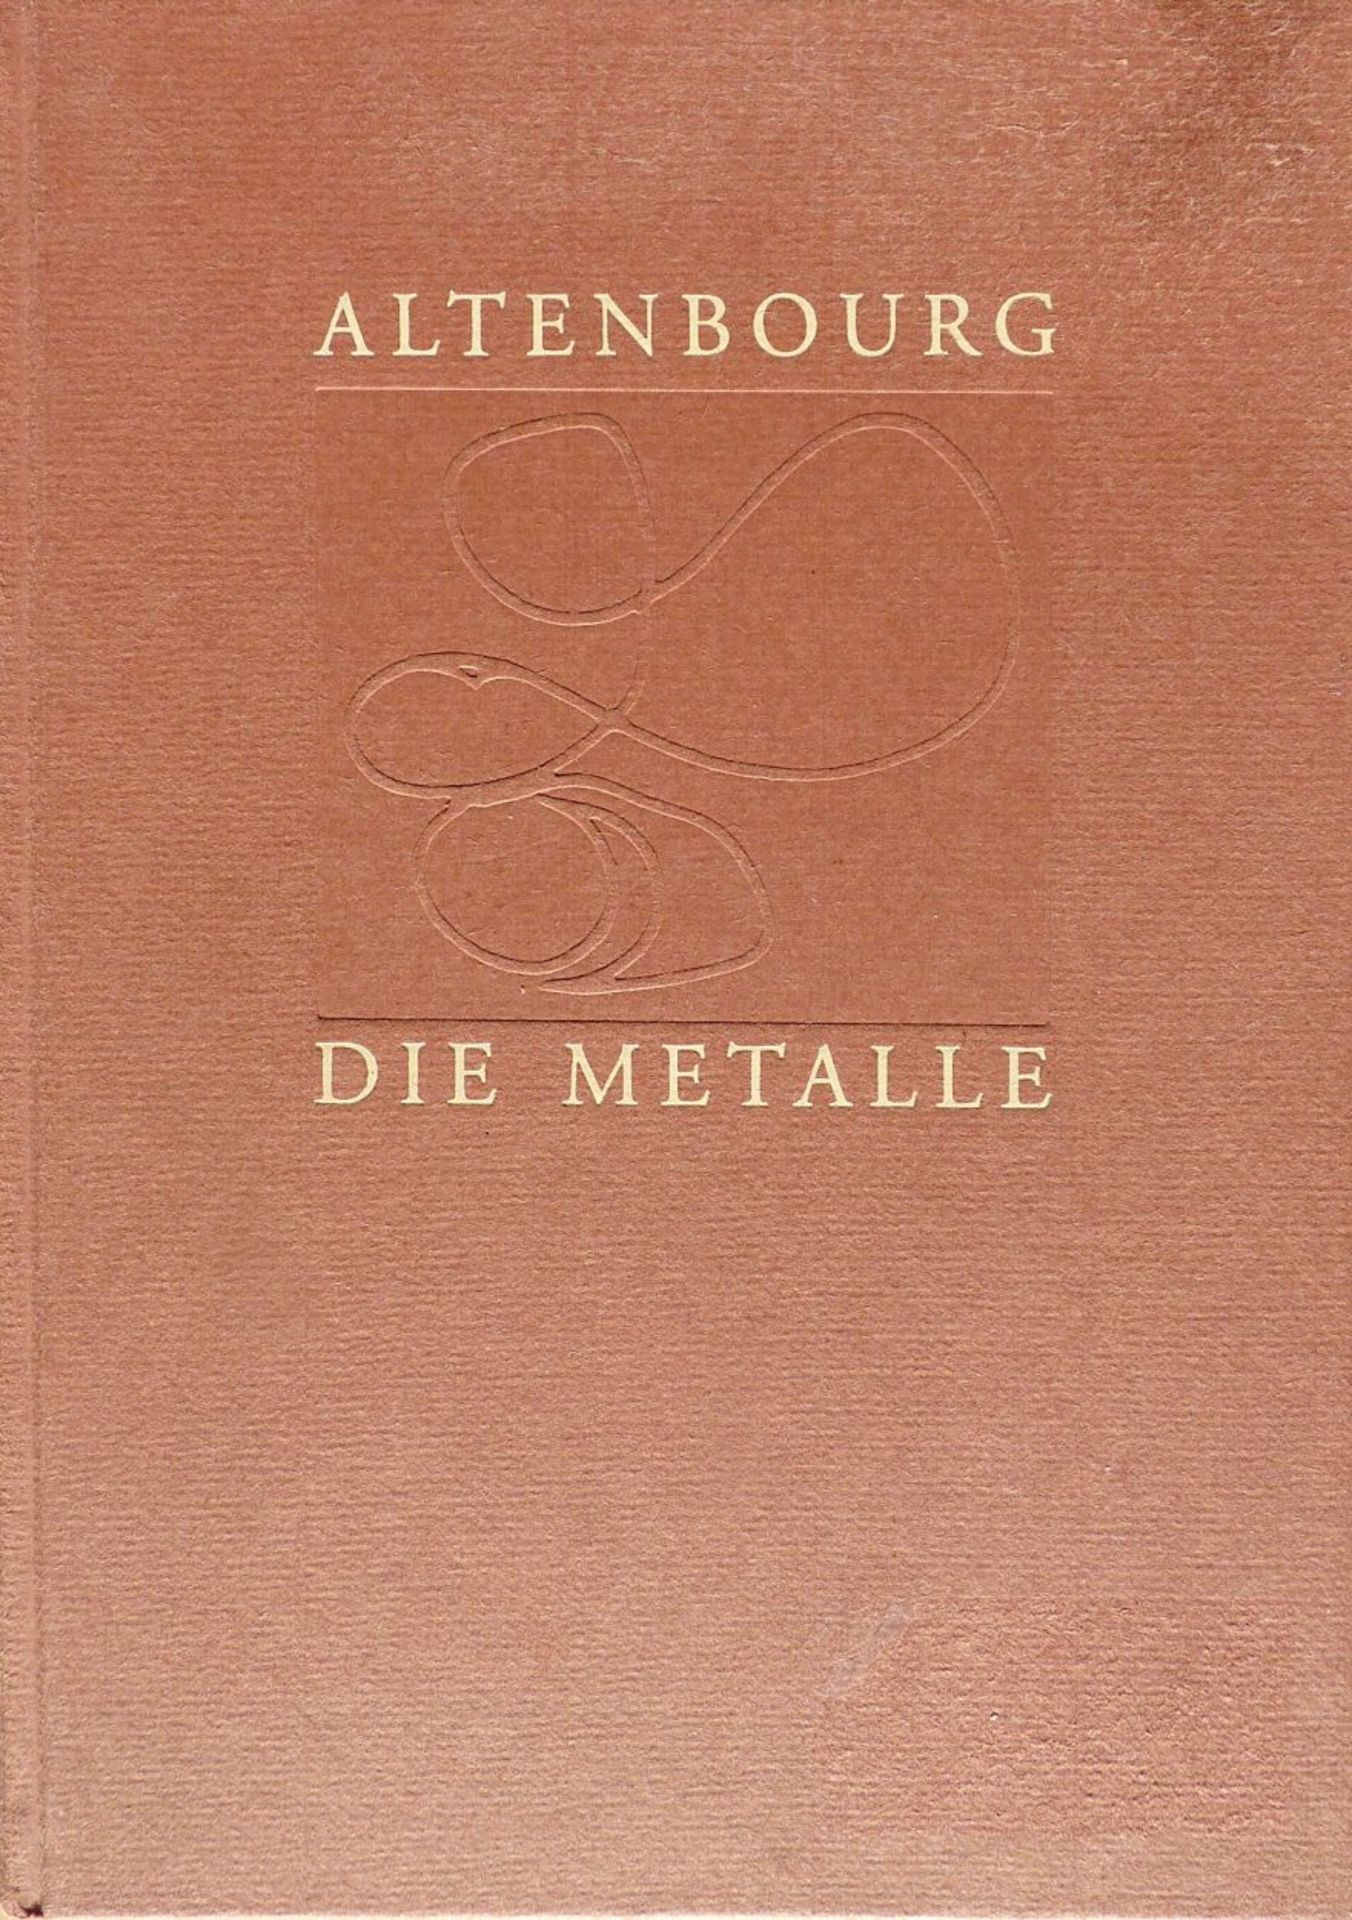 ALTENBOURG, GERHARD (Gerhard Ströch): "Die Metalle - sah ichs wie Feuer glänzen um und um", 199